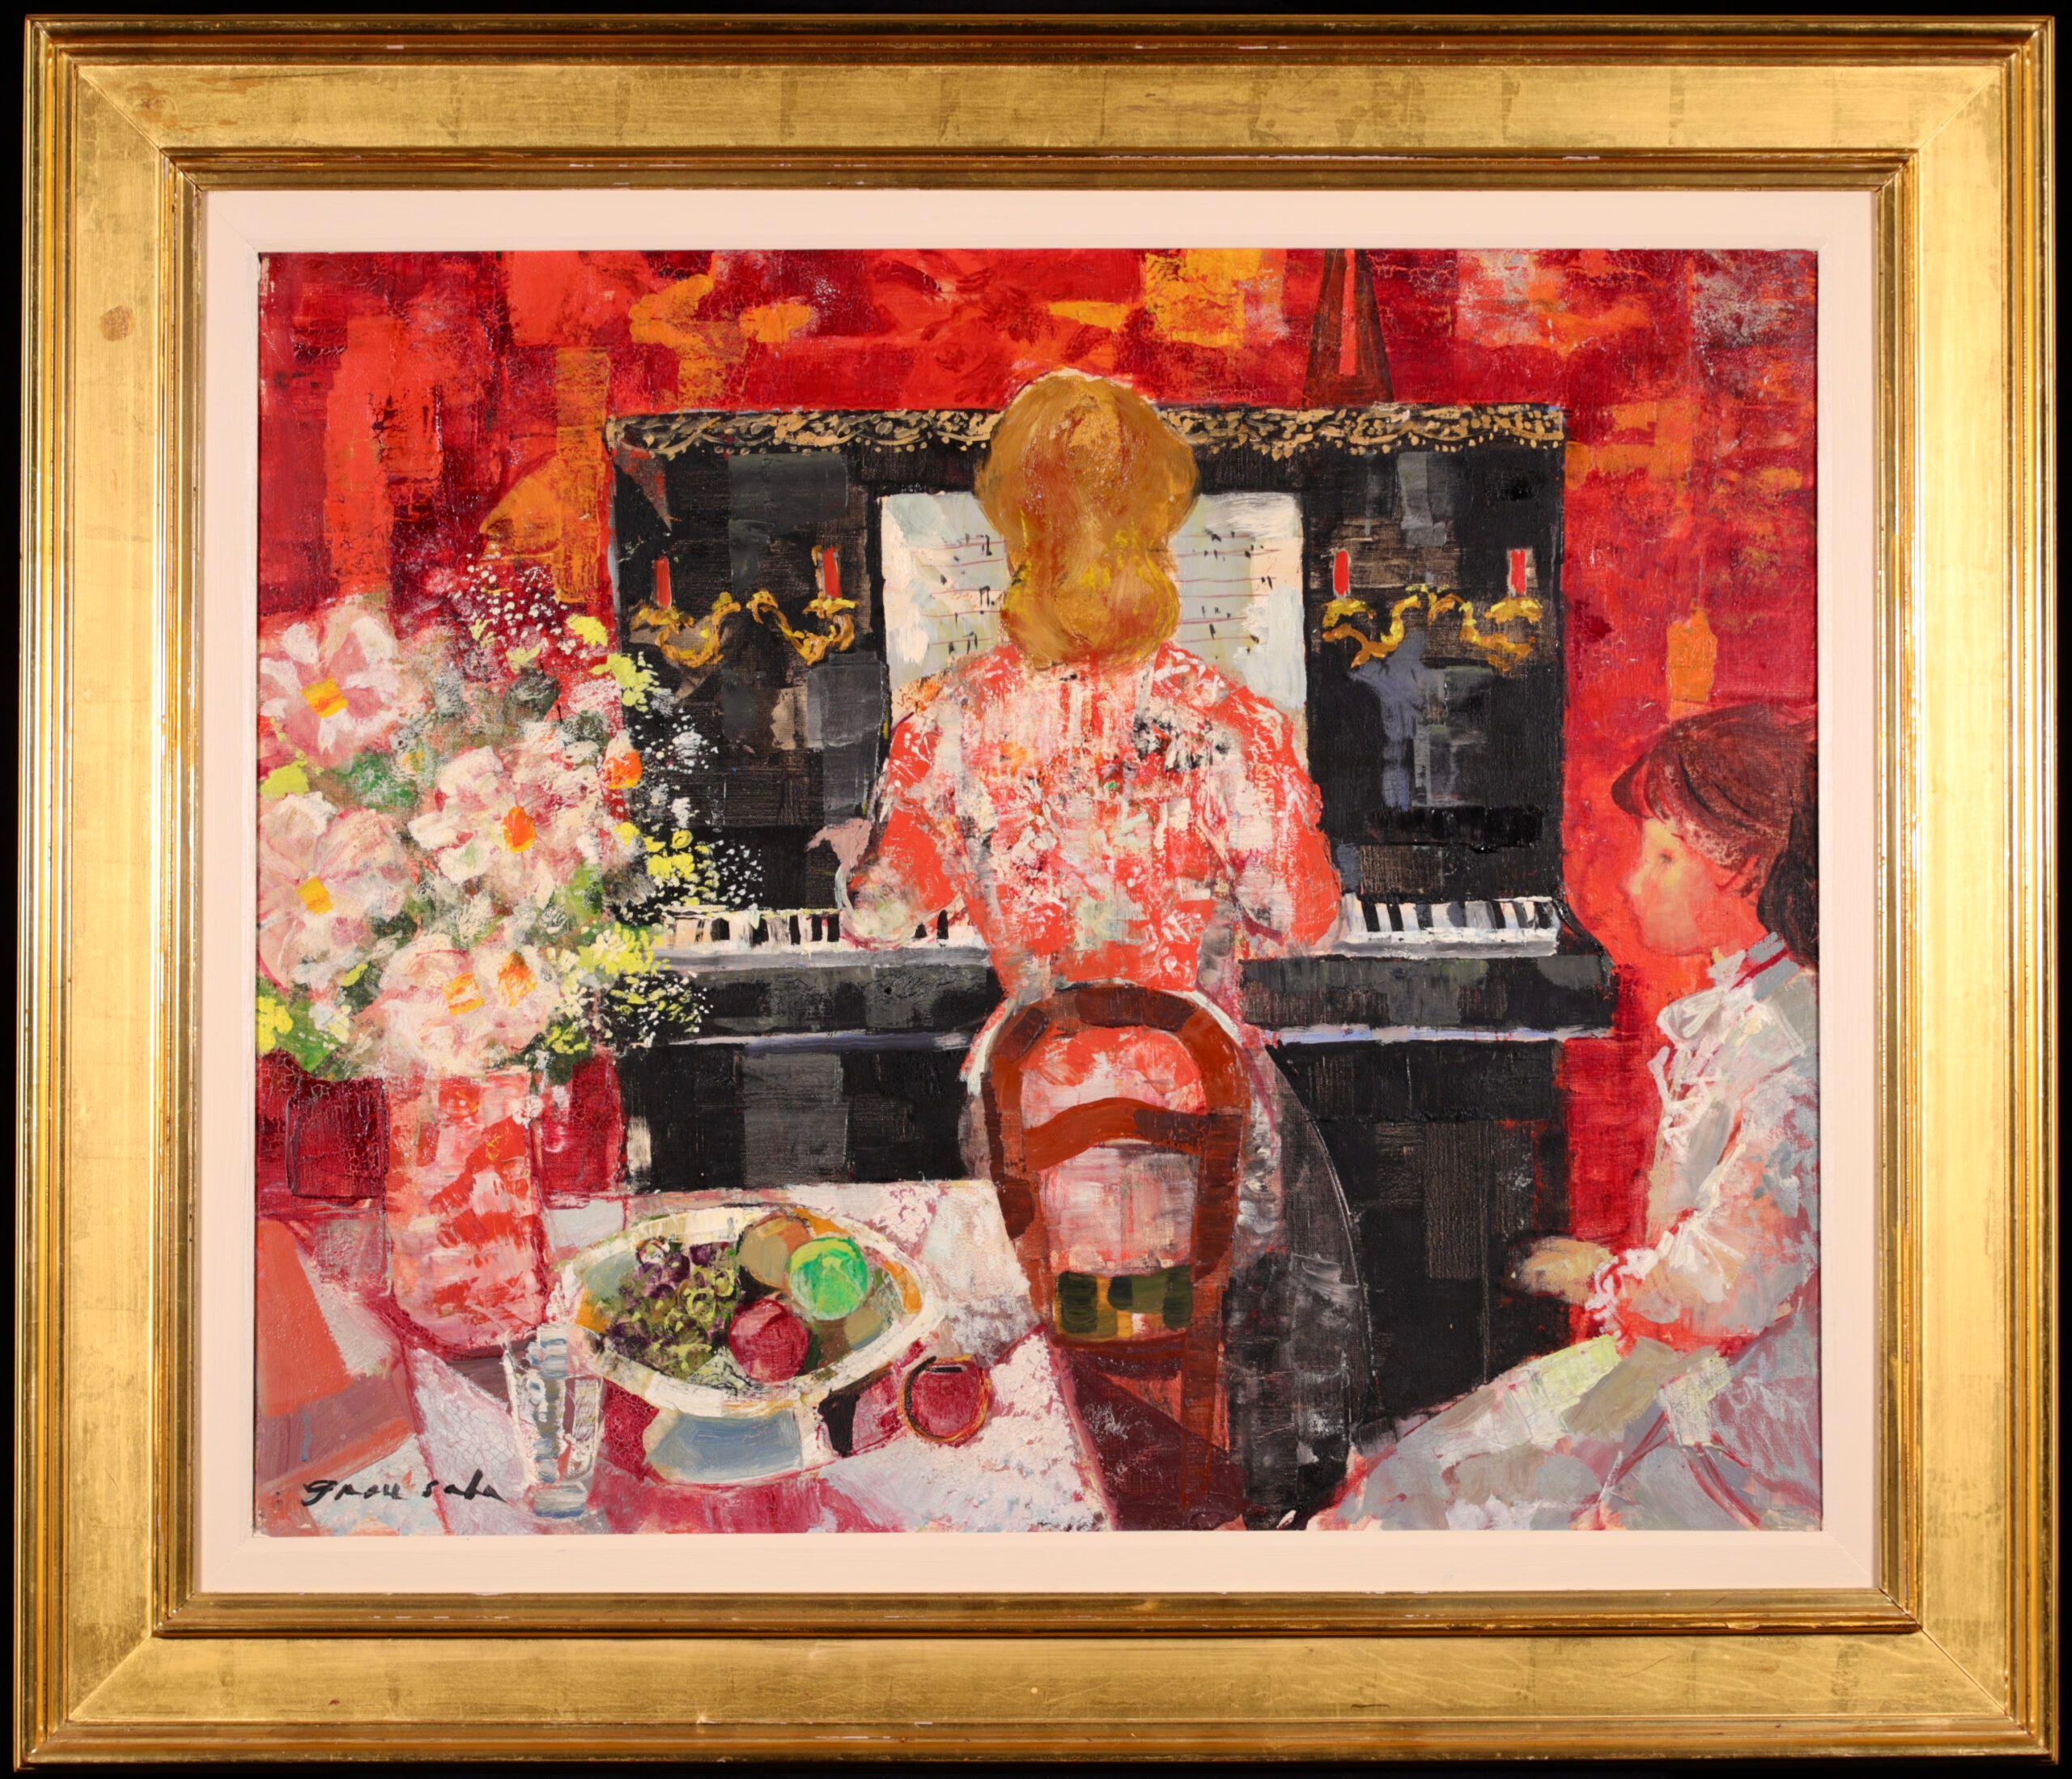 Signiert und betitelt Öl auf Leinwand Figur im Interieur um 1950 von spanischen Post-Impressionisten Emilio Grau Sala. Das Werk zeigt eine rothaarige Dame in einem roten Kleid, die an einem Klavier sitzt. Ein junges Mädchen sitzt neben dem Klavier.